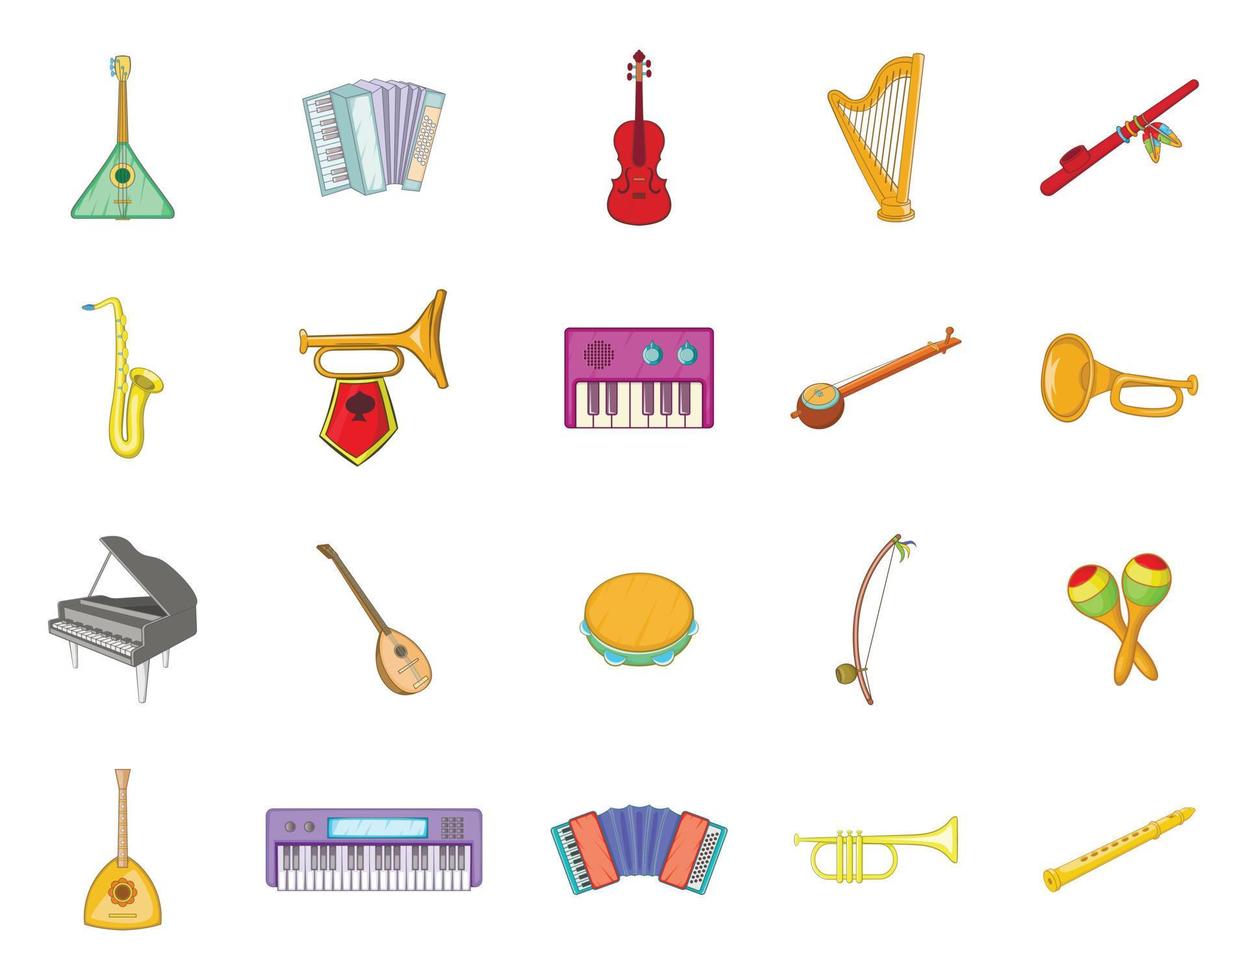 jeu d'icônes d'instruments de musique, style cartoon vecteur